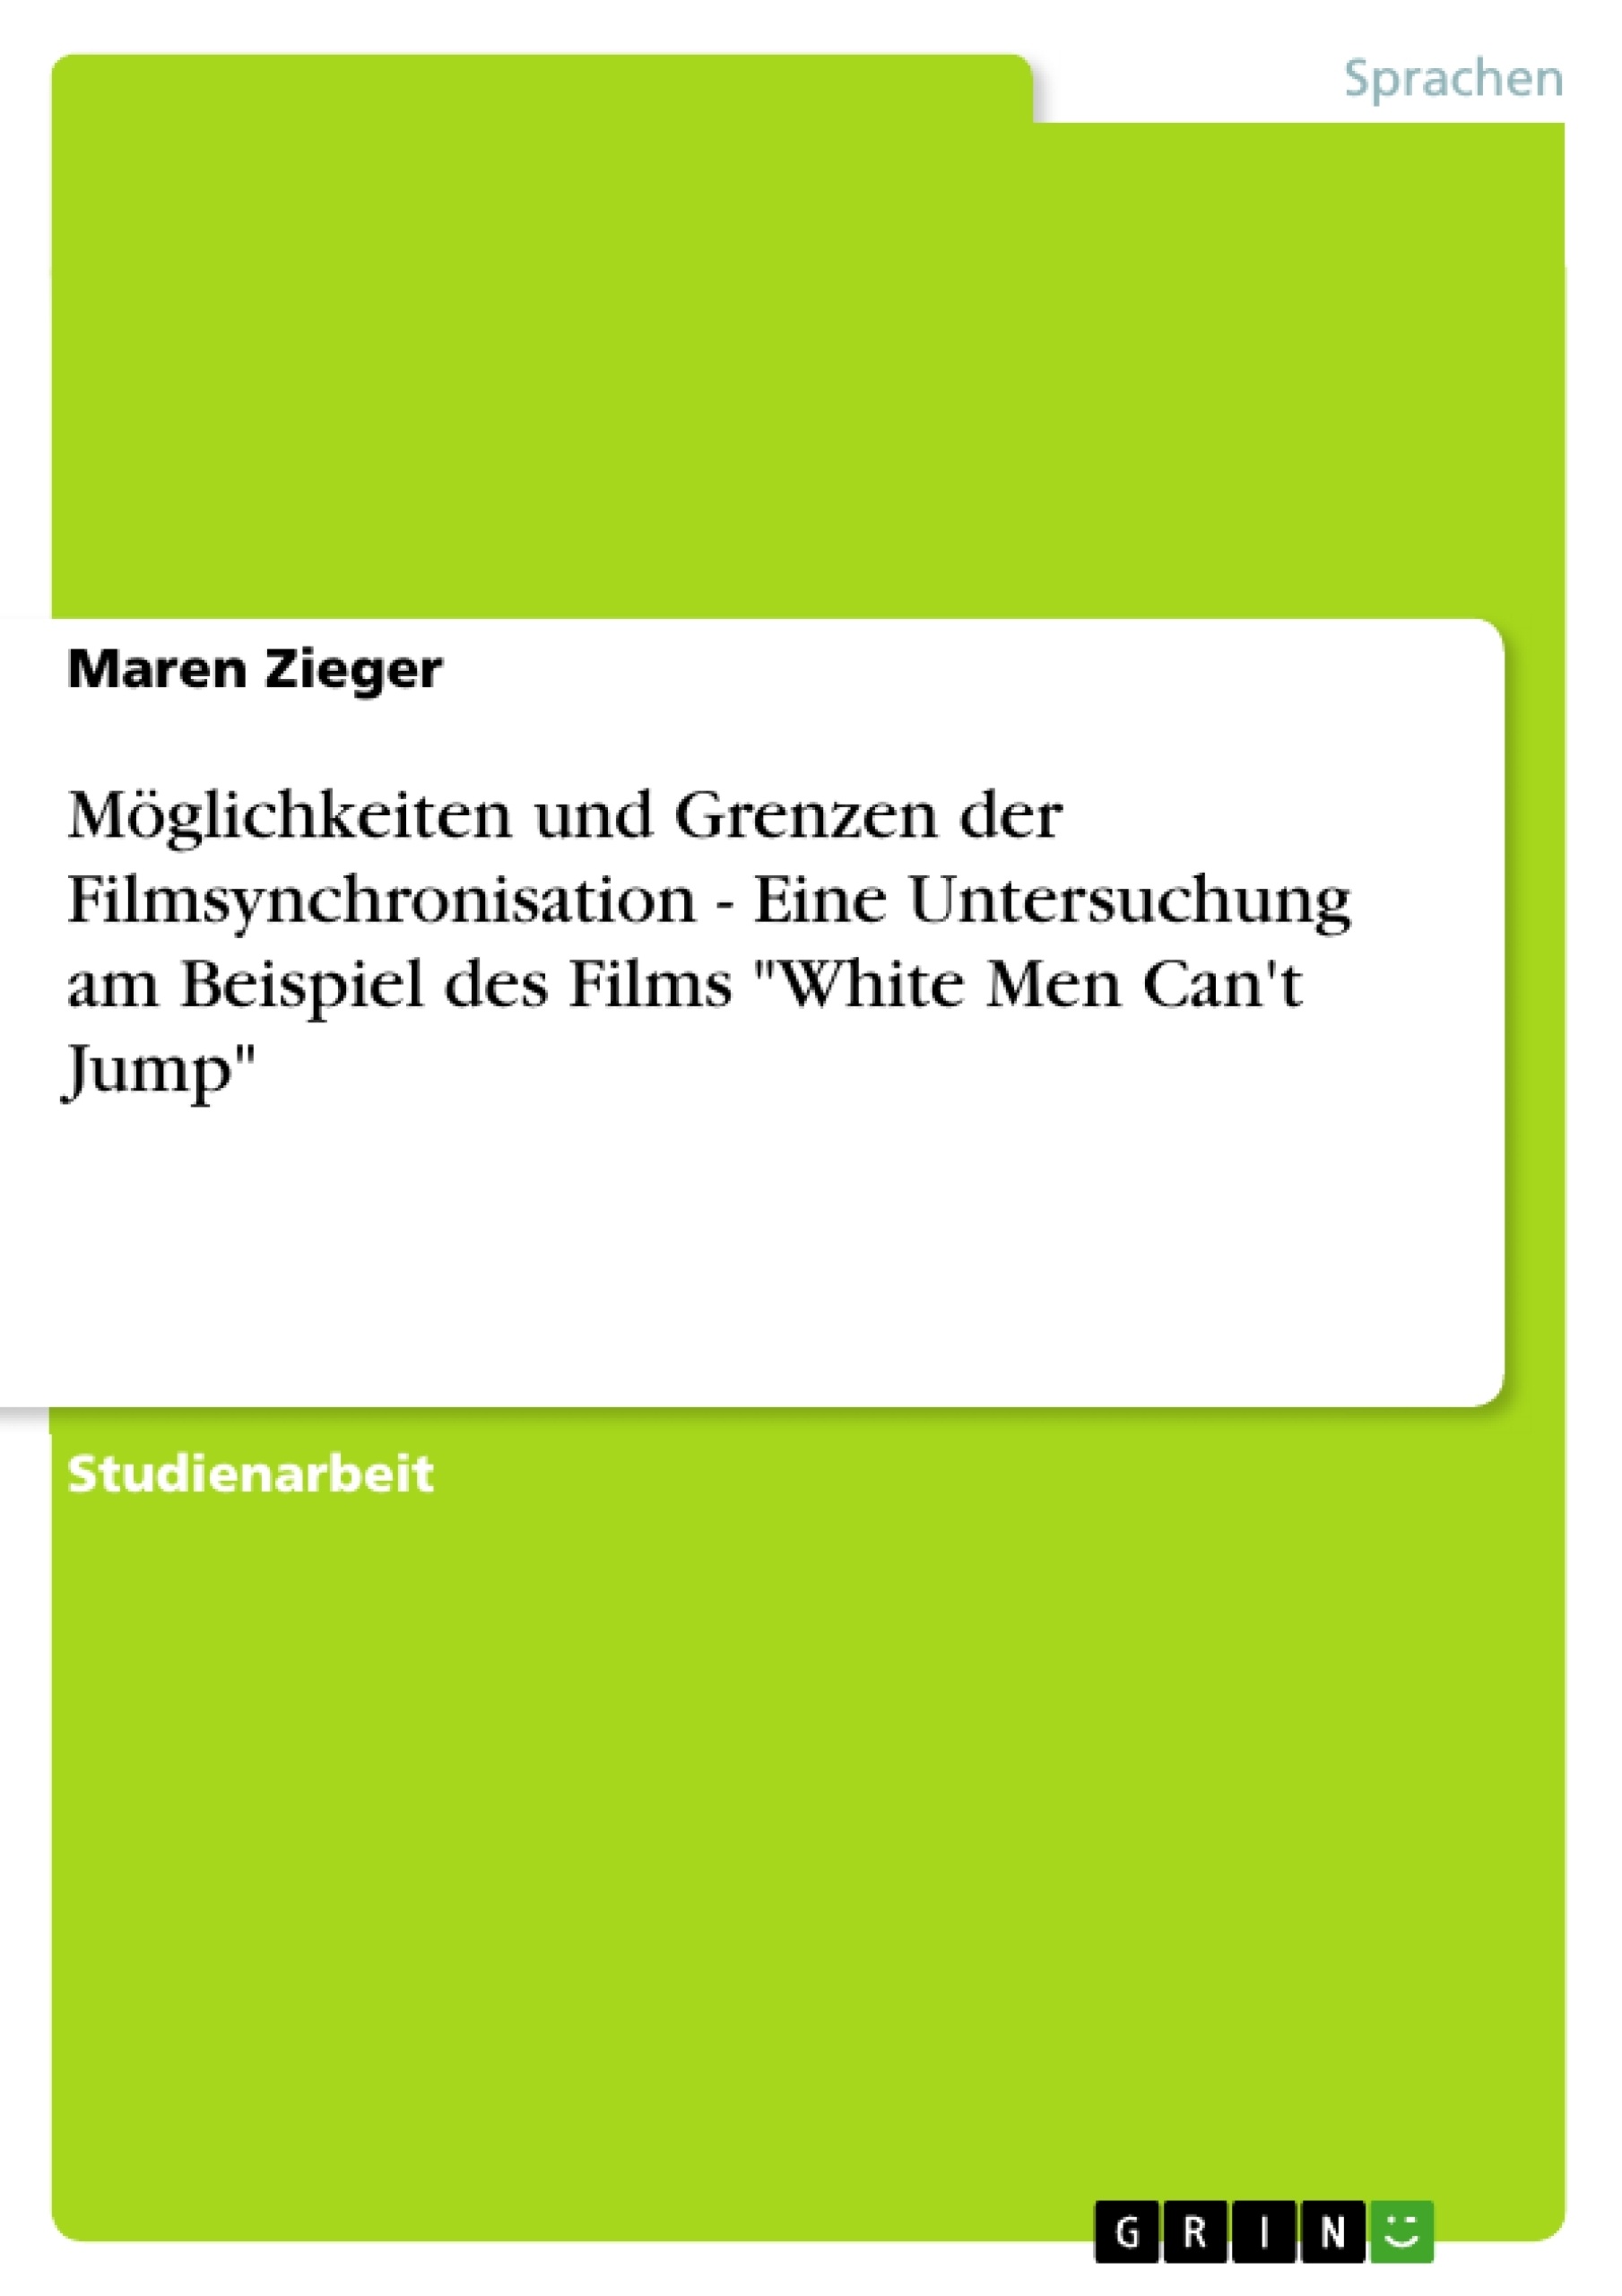 Titre: Möglichkeiten und Grenzen der Filmsynchronisation - Eine Untersuchung am Beispiel des Films "White Men Can't Jump"